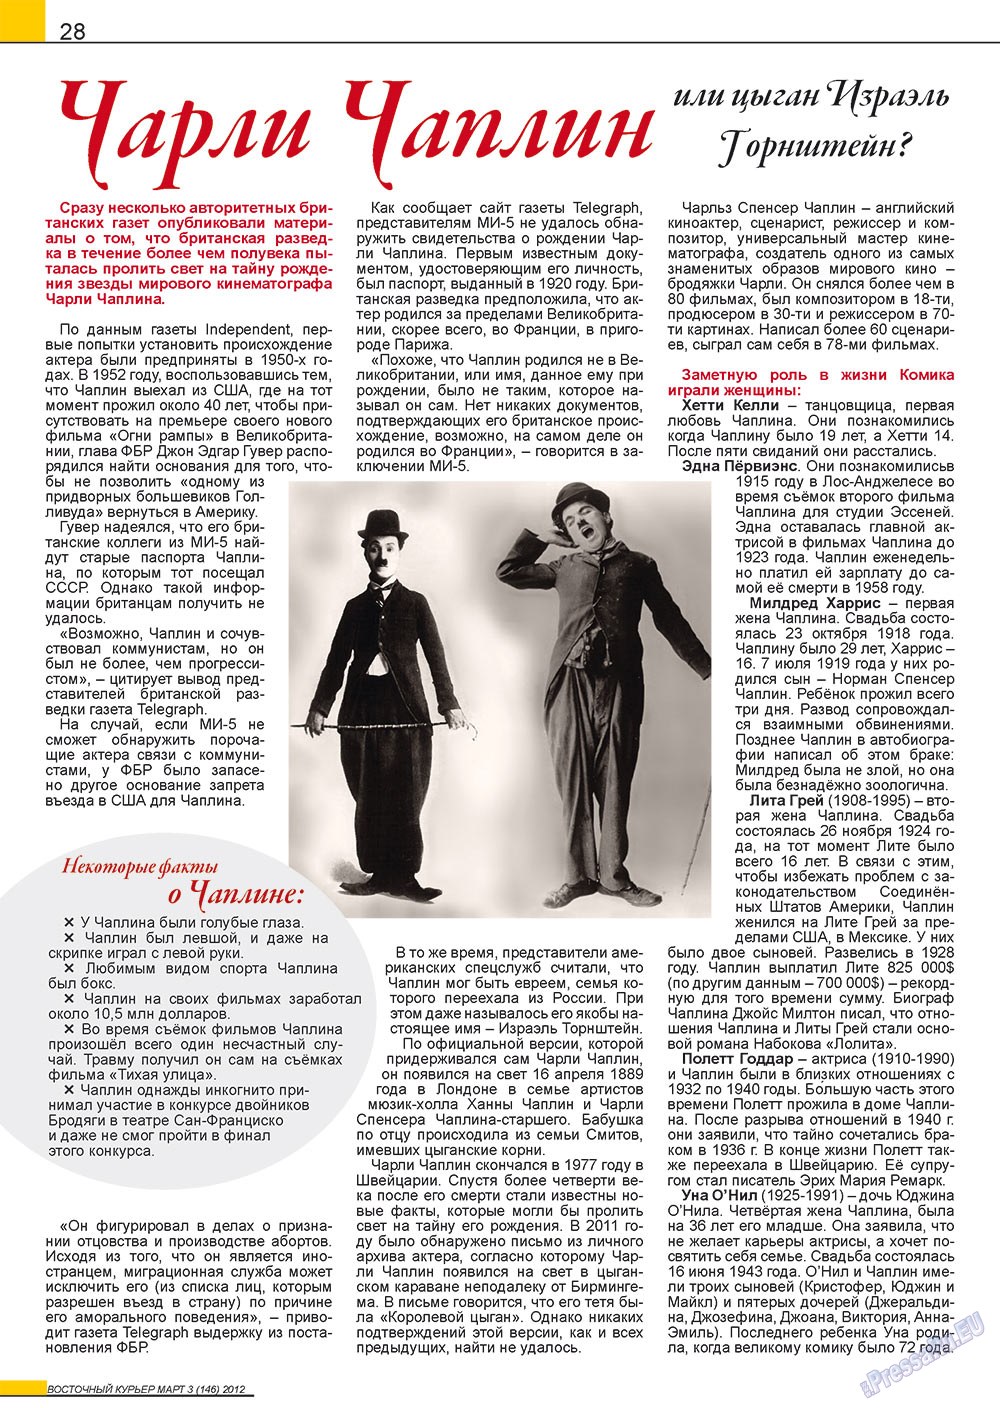 Восточный курьер (журнал). 2012 год, номер 3, стр. 28